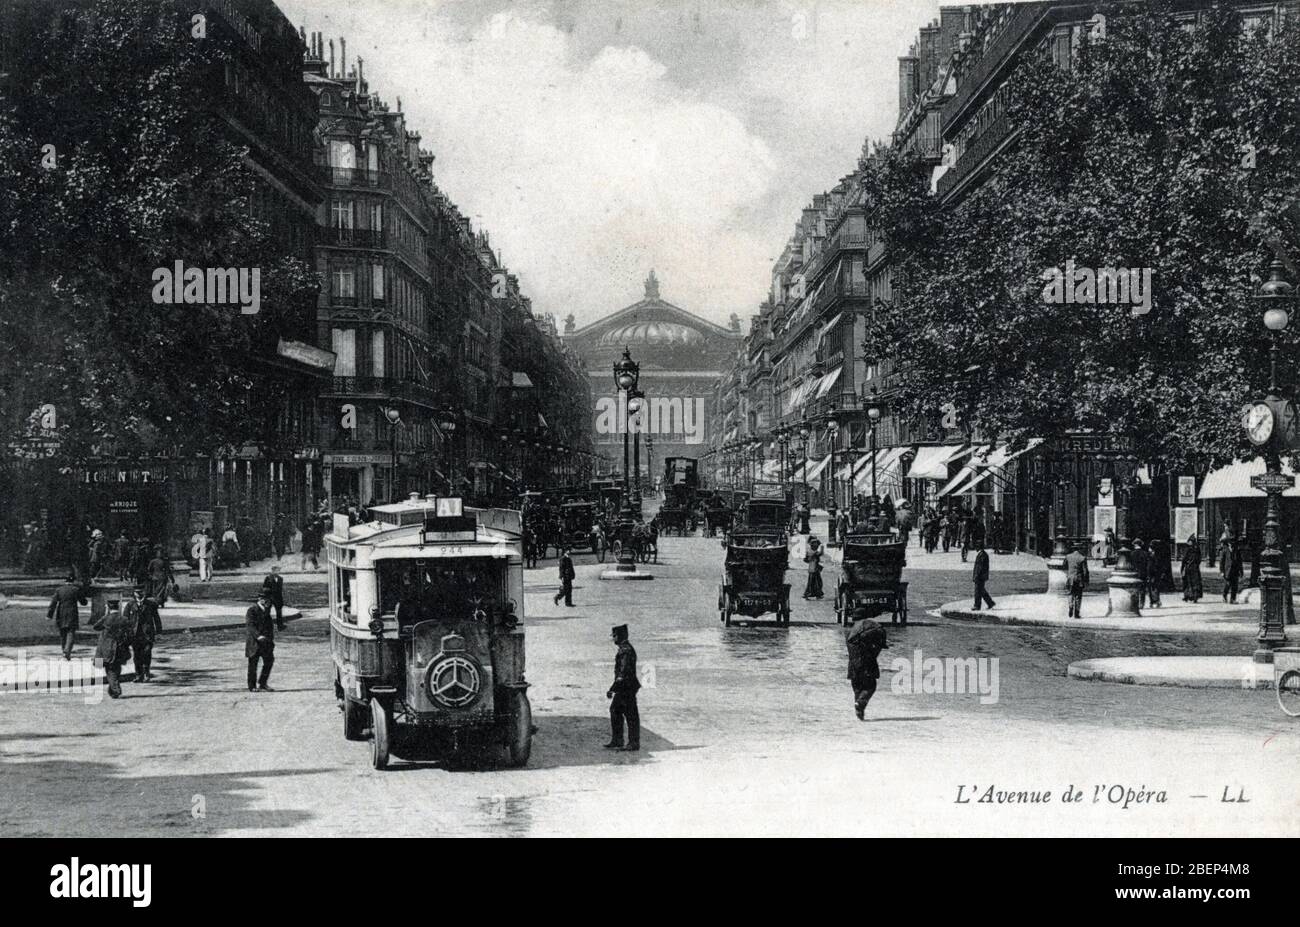 Vue de l'avenue de l'Opera a Paris 1905 - 1910 environ Carte postale Collection privee Stock Photo